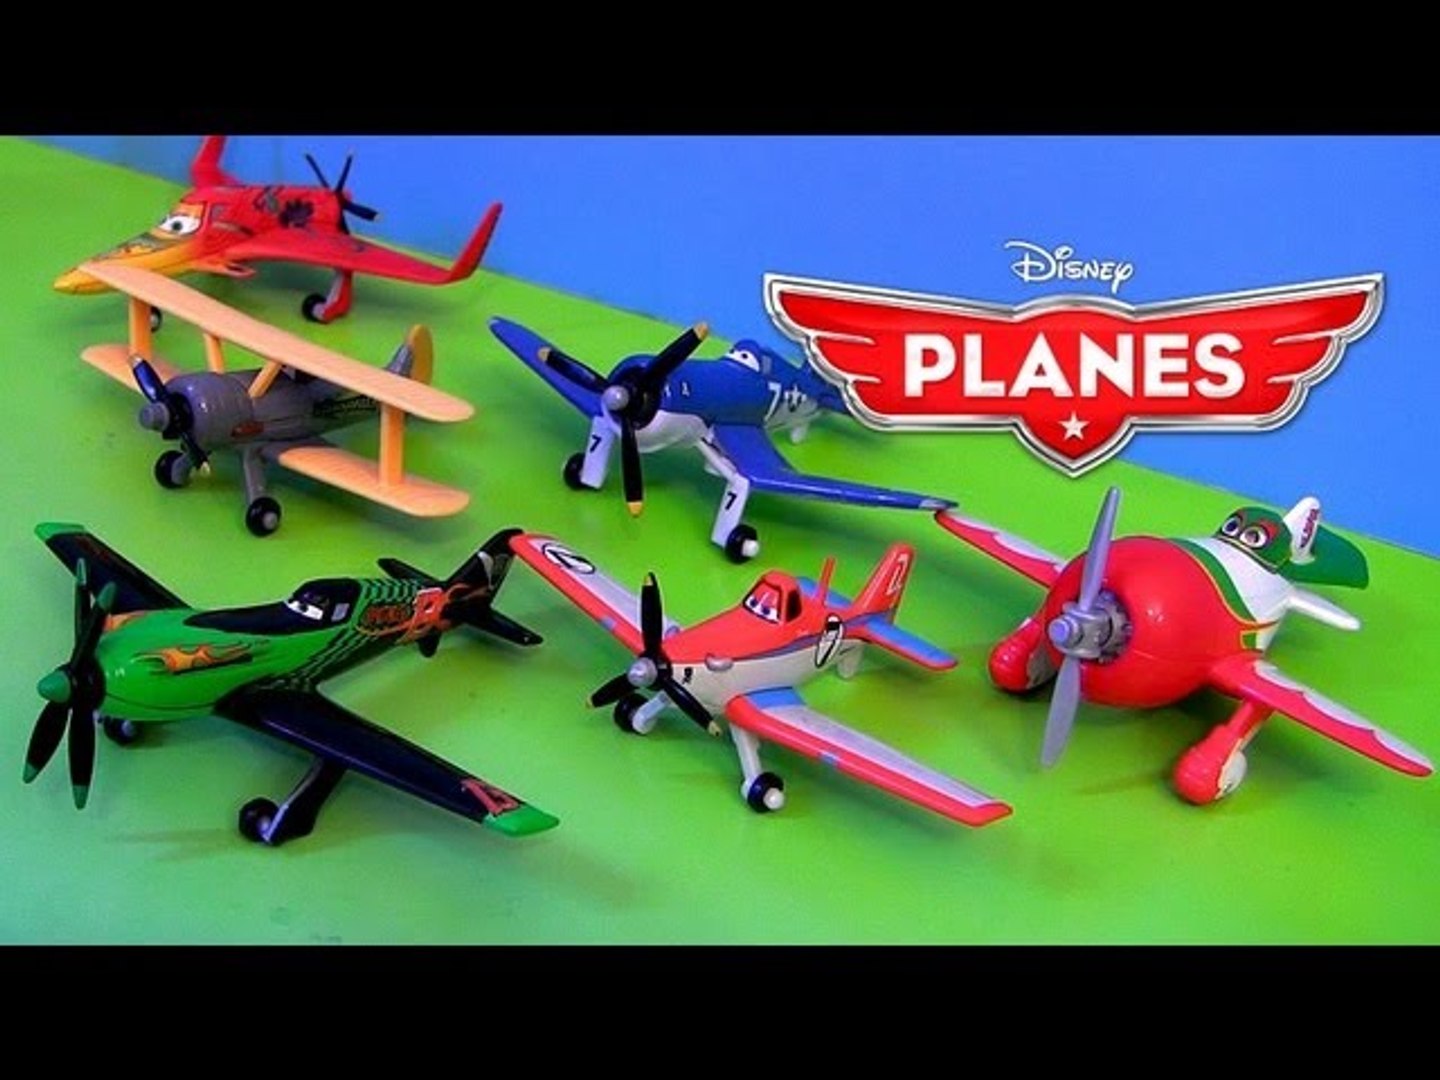 Киндер самолеты. Игрушки самолеты Дисней Дасти. Самолеты Рипслингер и Дасти. Самолёты игрушки Дисней Mattel Ripslinger. Самолёты Дасти Полейполе игрушки Racer.